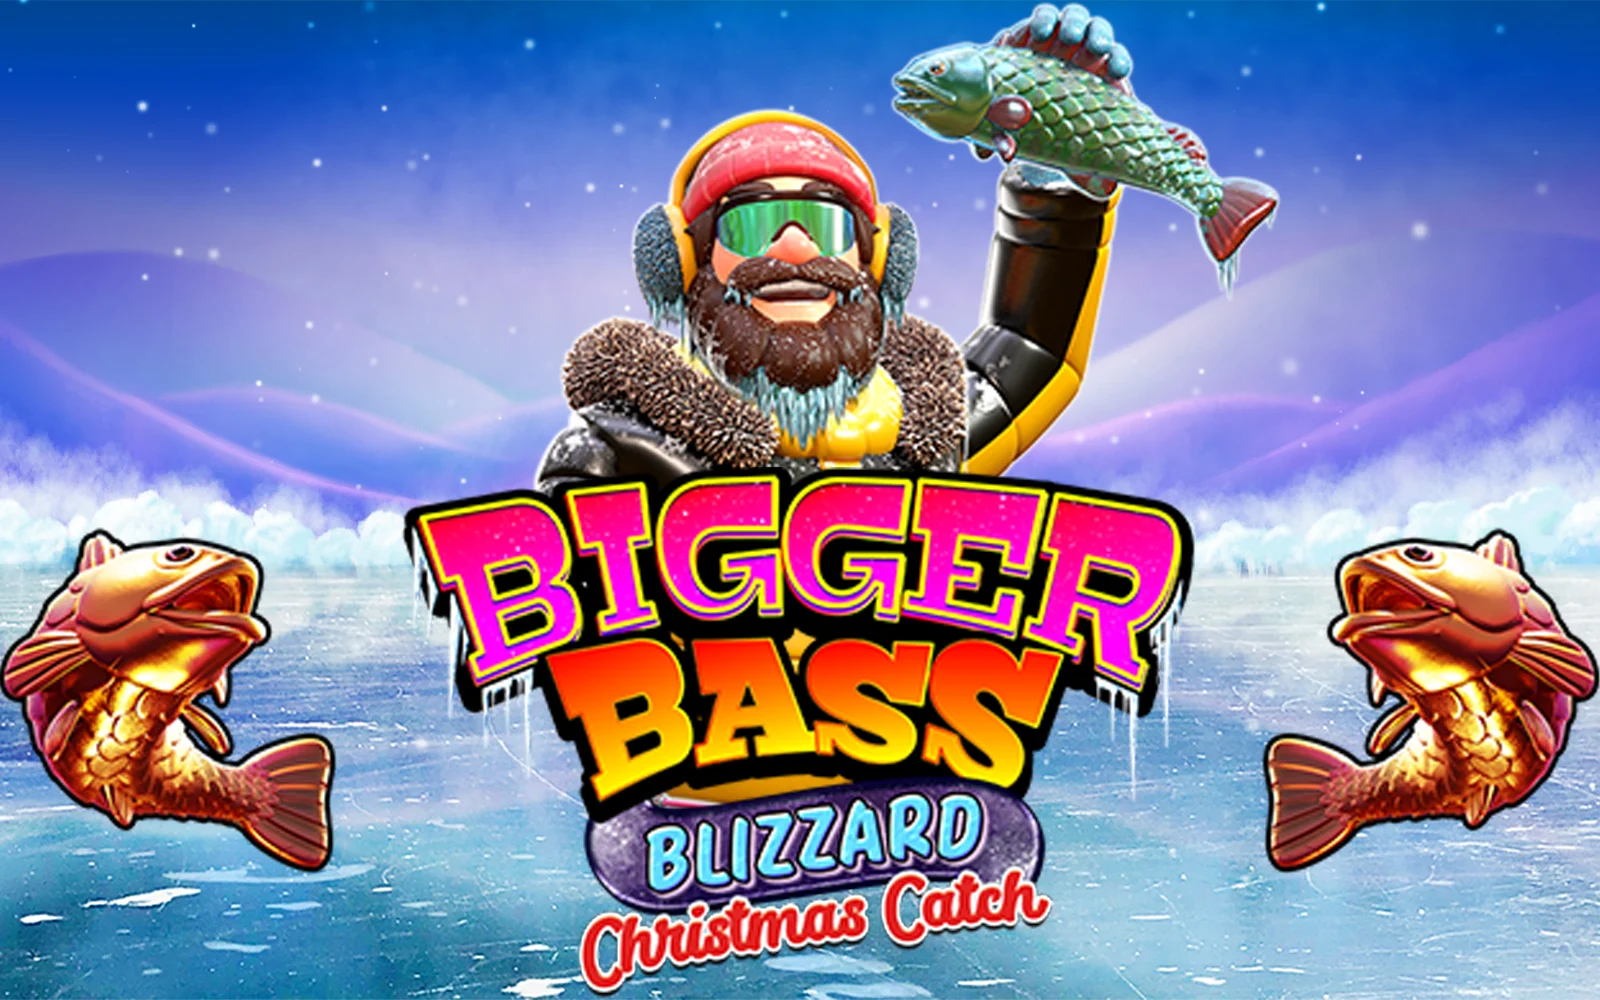 Παίξτε Bigger Bass Blizzard - Christmas Catch™ στο online καζίνο Starcasino.be